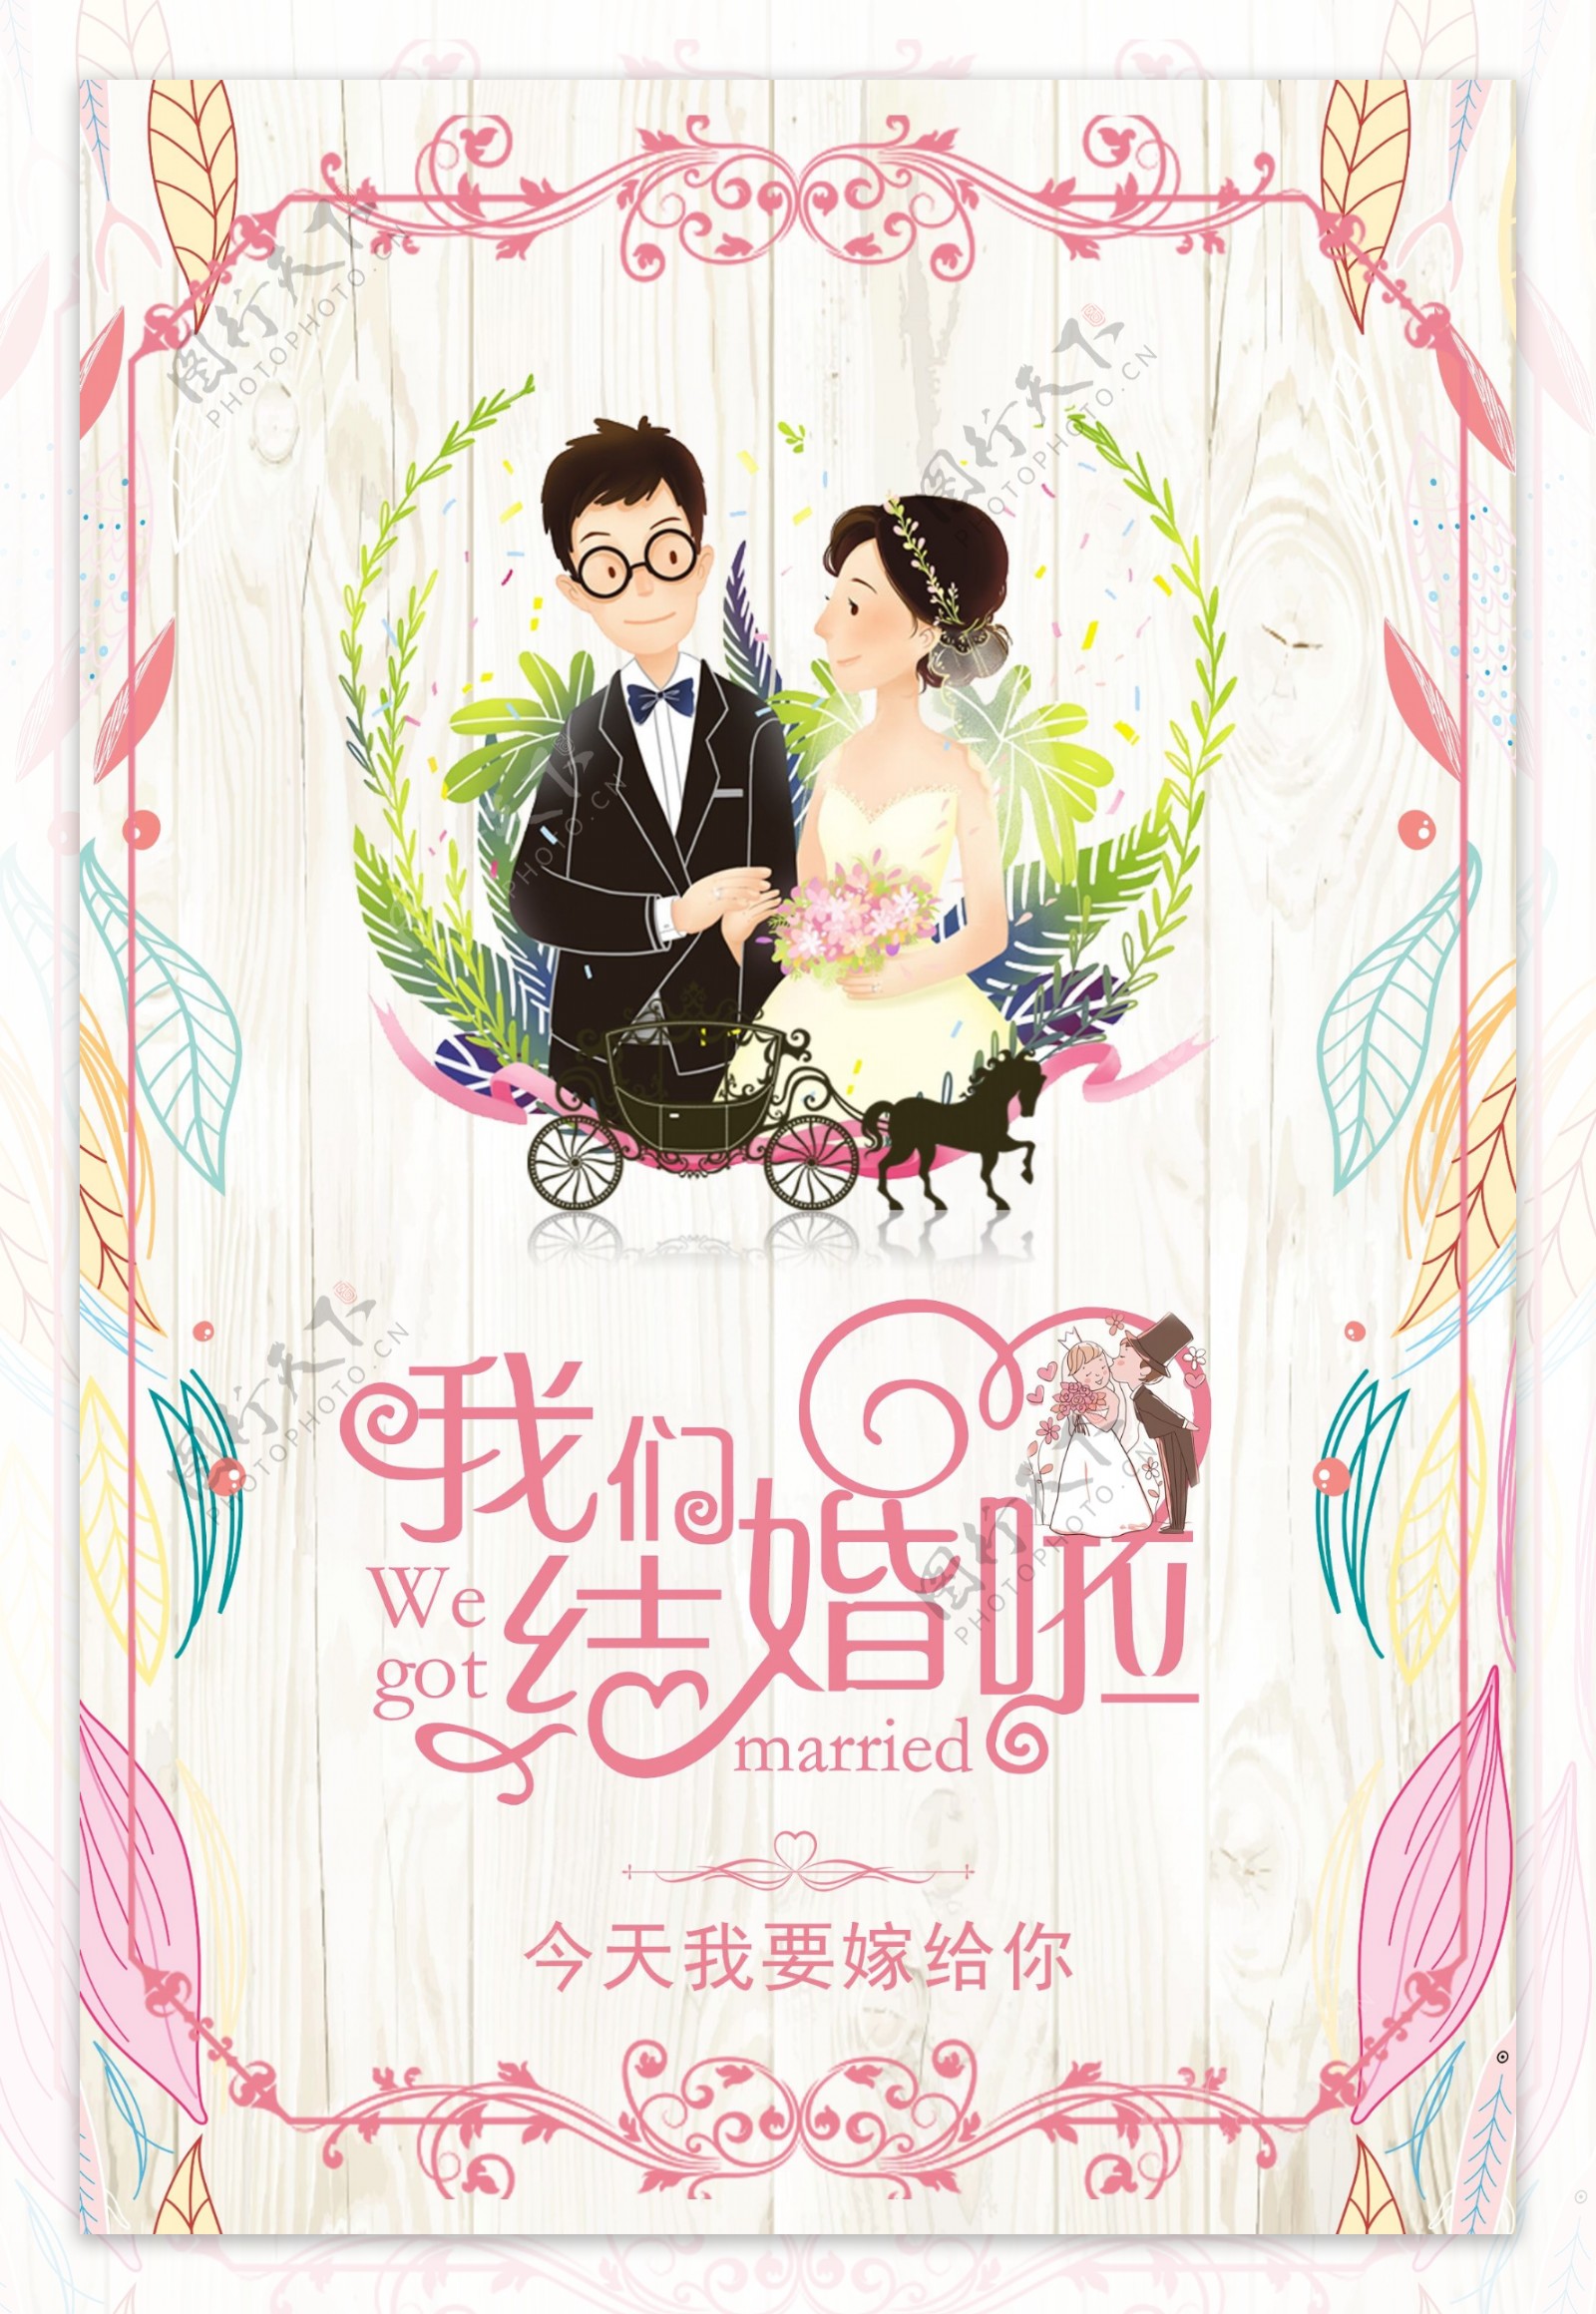 小清新唯美婚礼相亲爱情主题海报